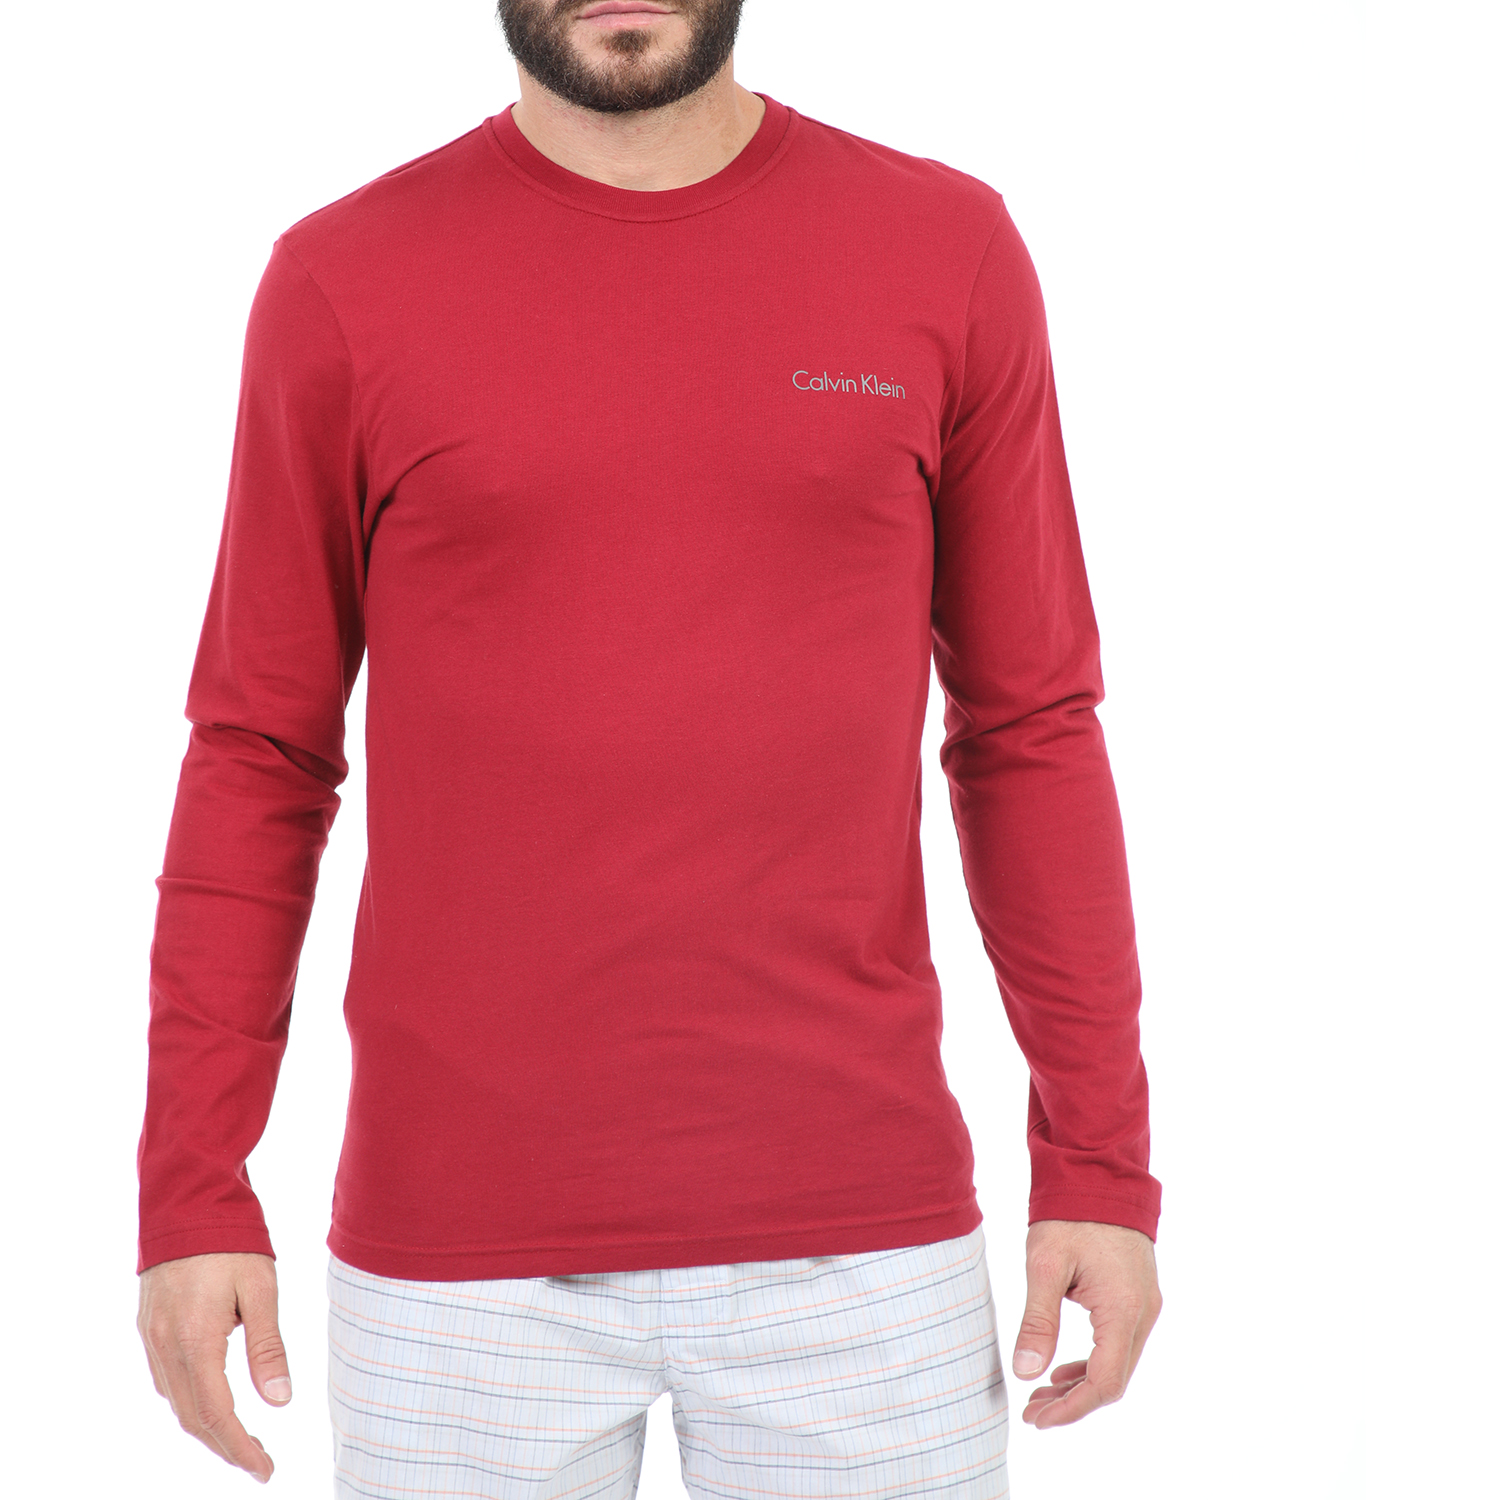 Ανδρικά/Ρούχα/Μπλούζες/Μακρυμάνικες CK - Ανδρική μακρυμάνικη μπλούζα CK JANTOLO MERCERIZED SINGLE JERS κόκκινη